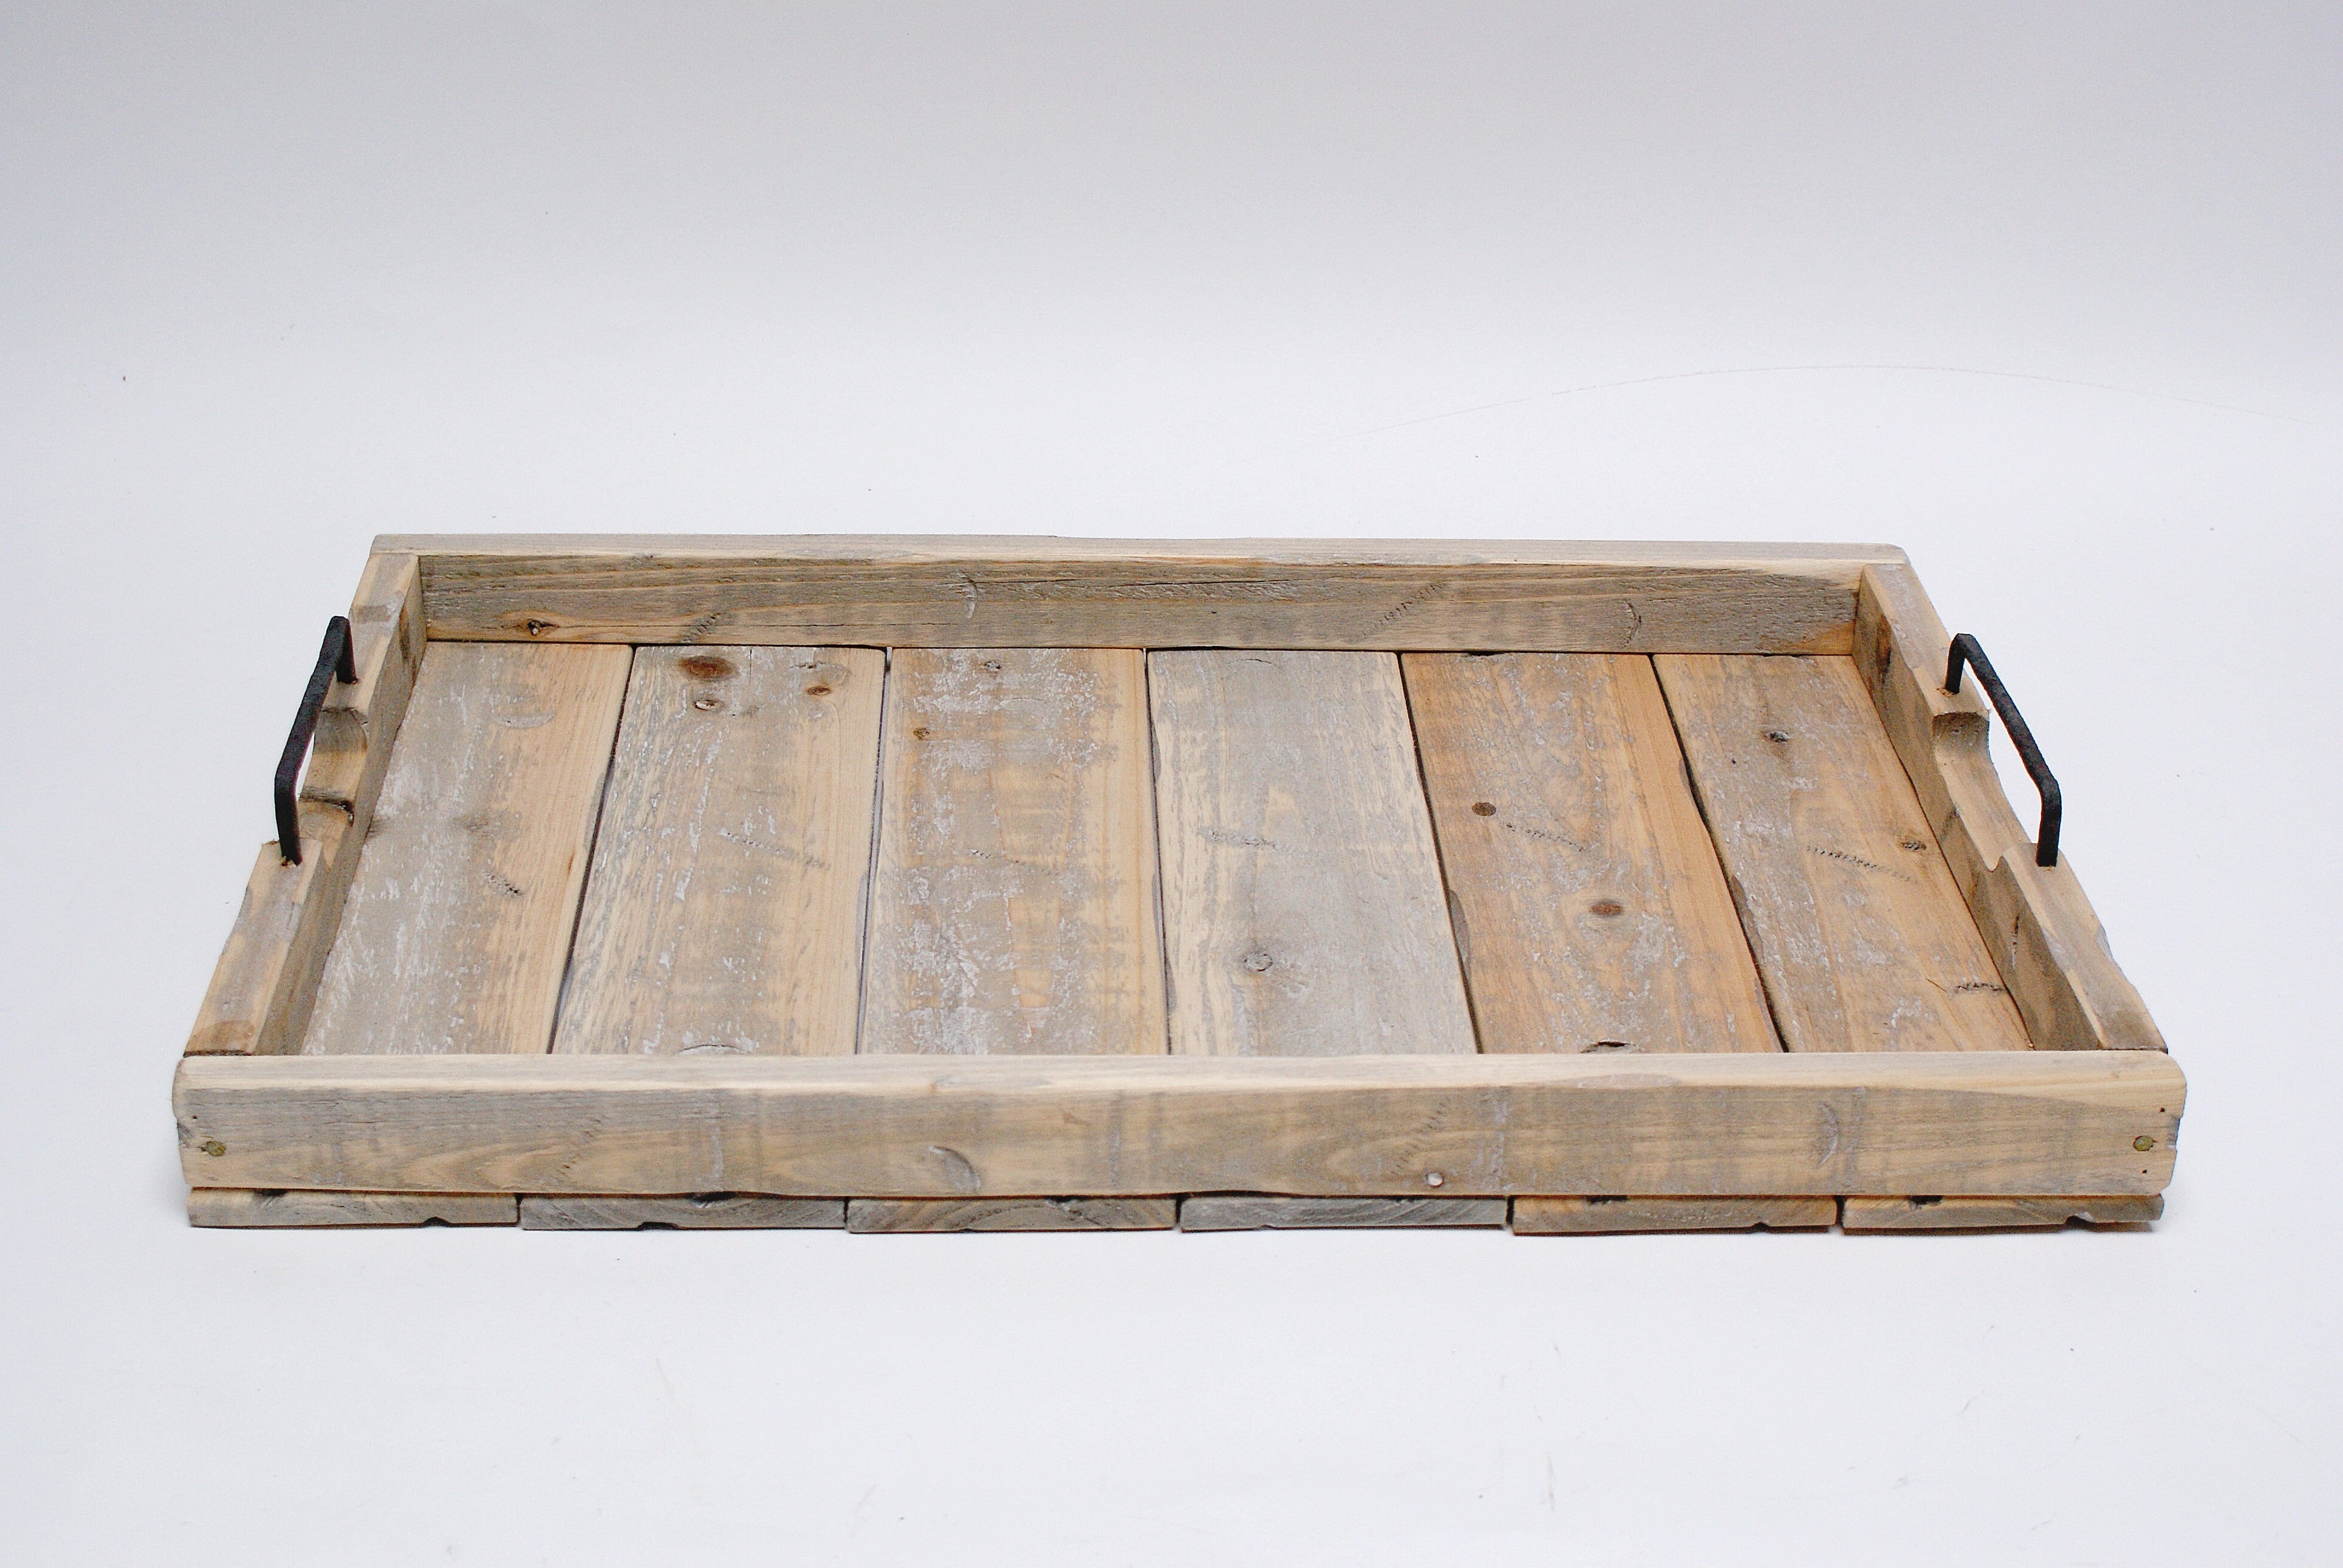 Wooden Rectangular Tray w/ Handles  White Wash 22.8"x 15"x 2.4"